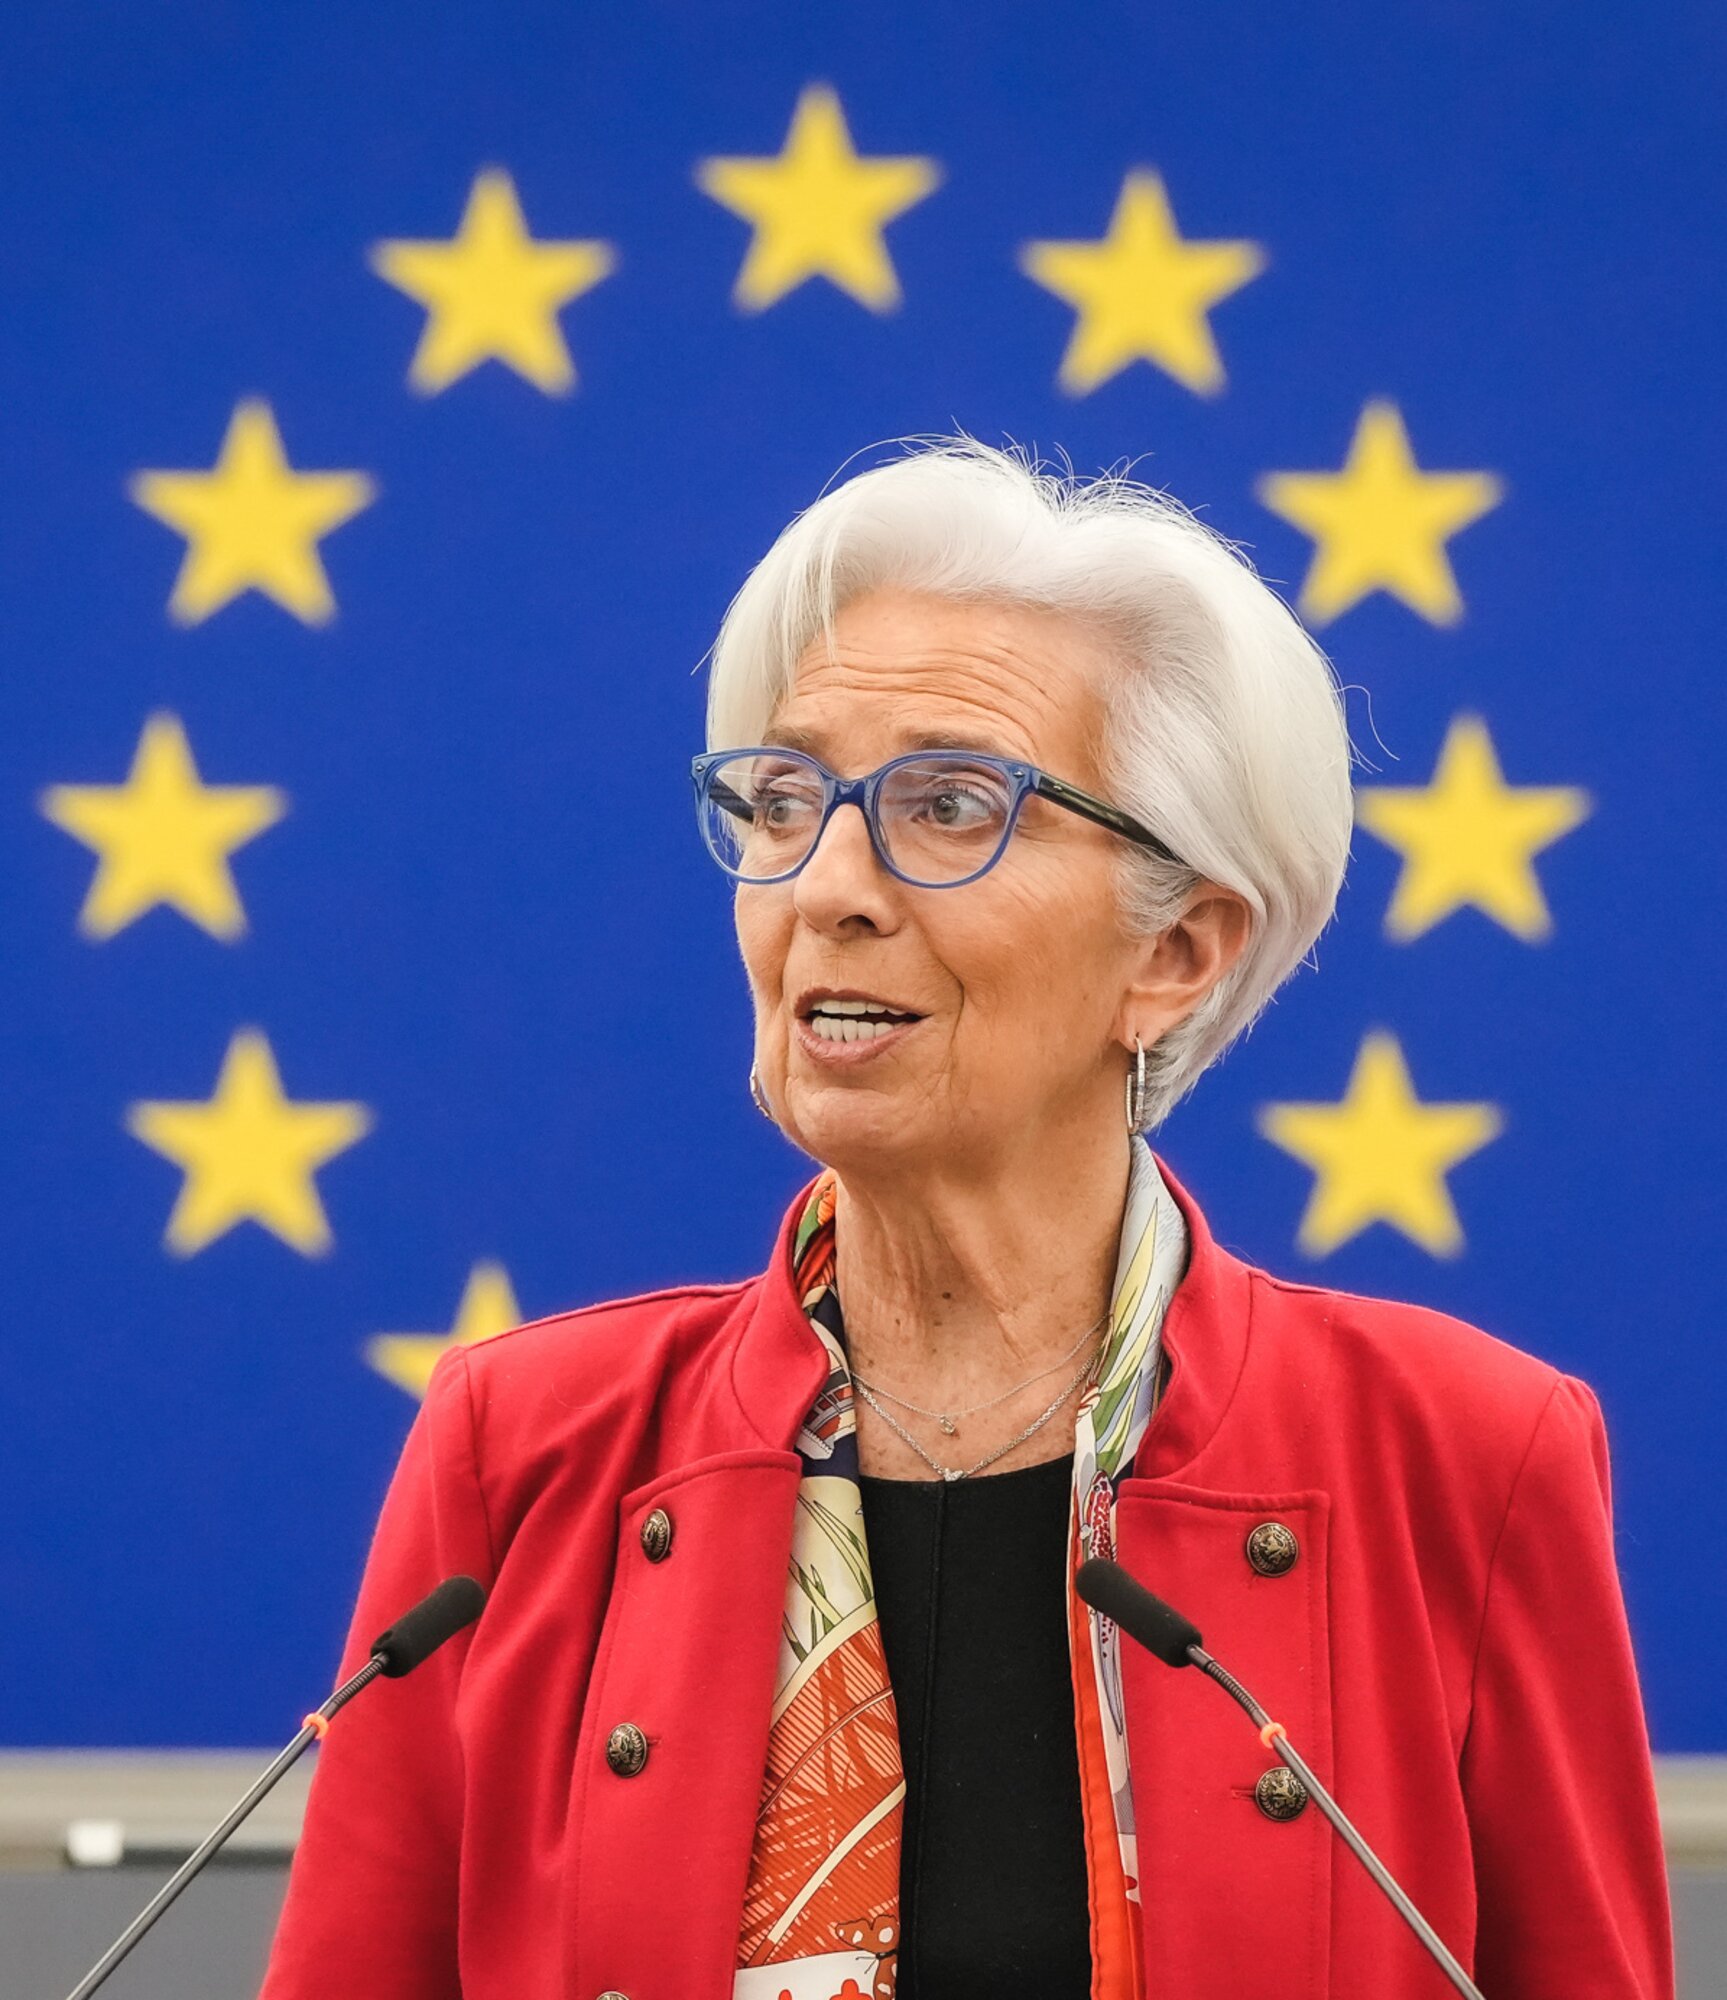 A második helyen a francia politikus és közgazdász, Christina Lagarde. 2011-2019 között ő volt a Nemzetközi Valutaalap (IMF) vezérigazgatója, majd 2019-től az Európai Központi Bank elnöke is. Mindkét szervezet élén ő az első női vezető.